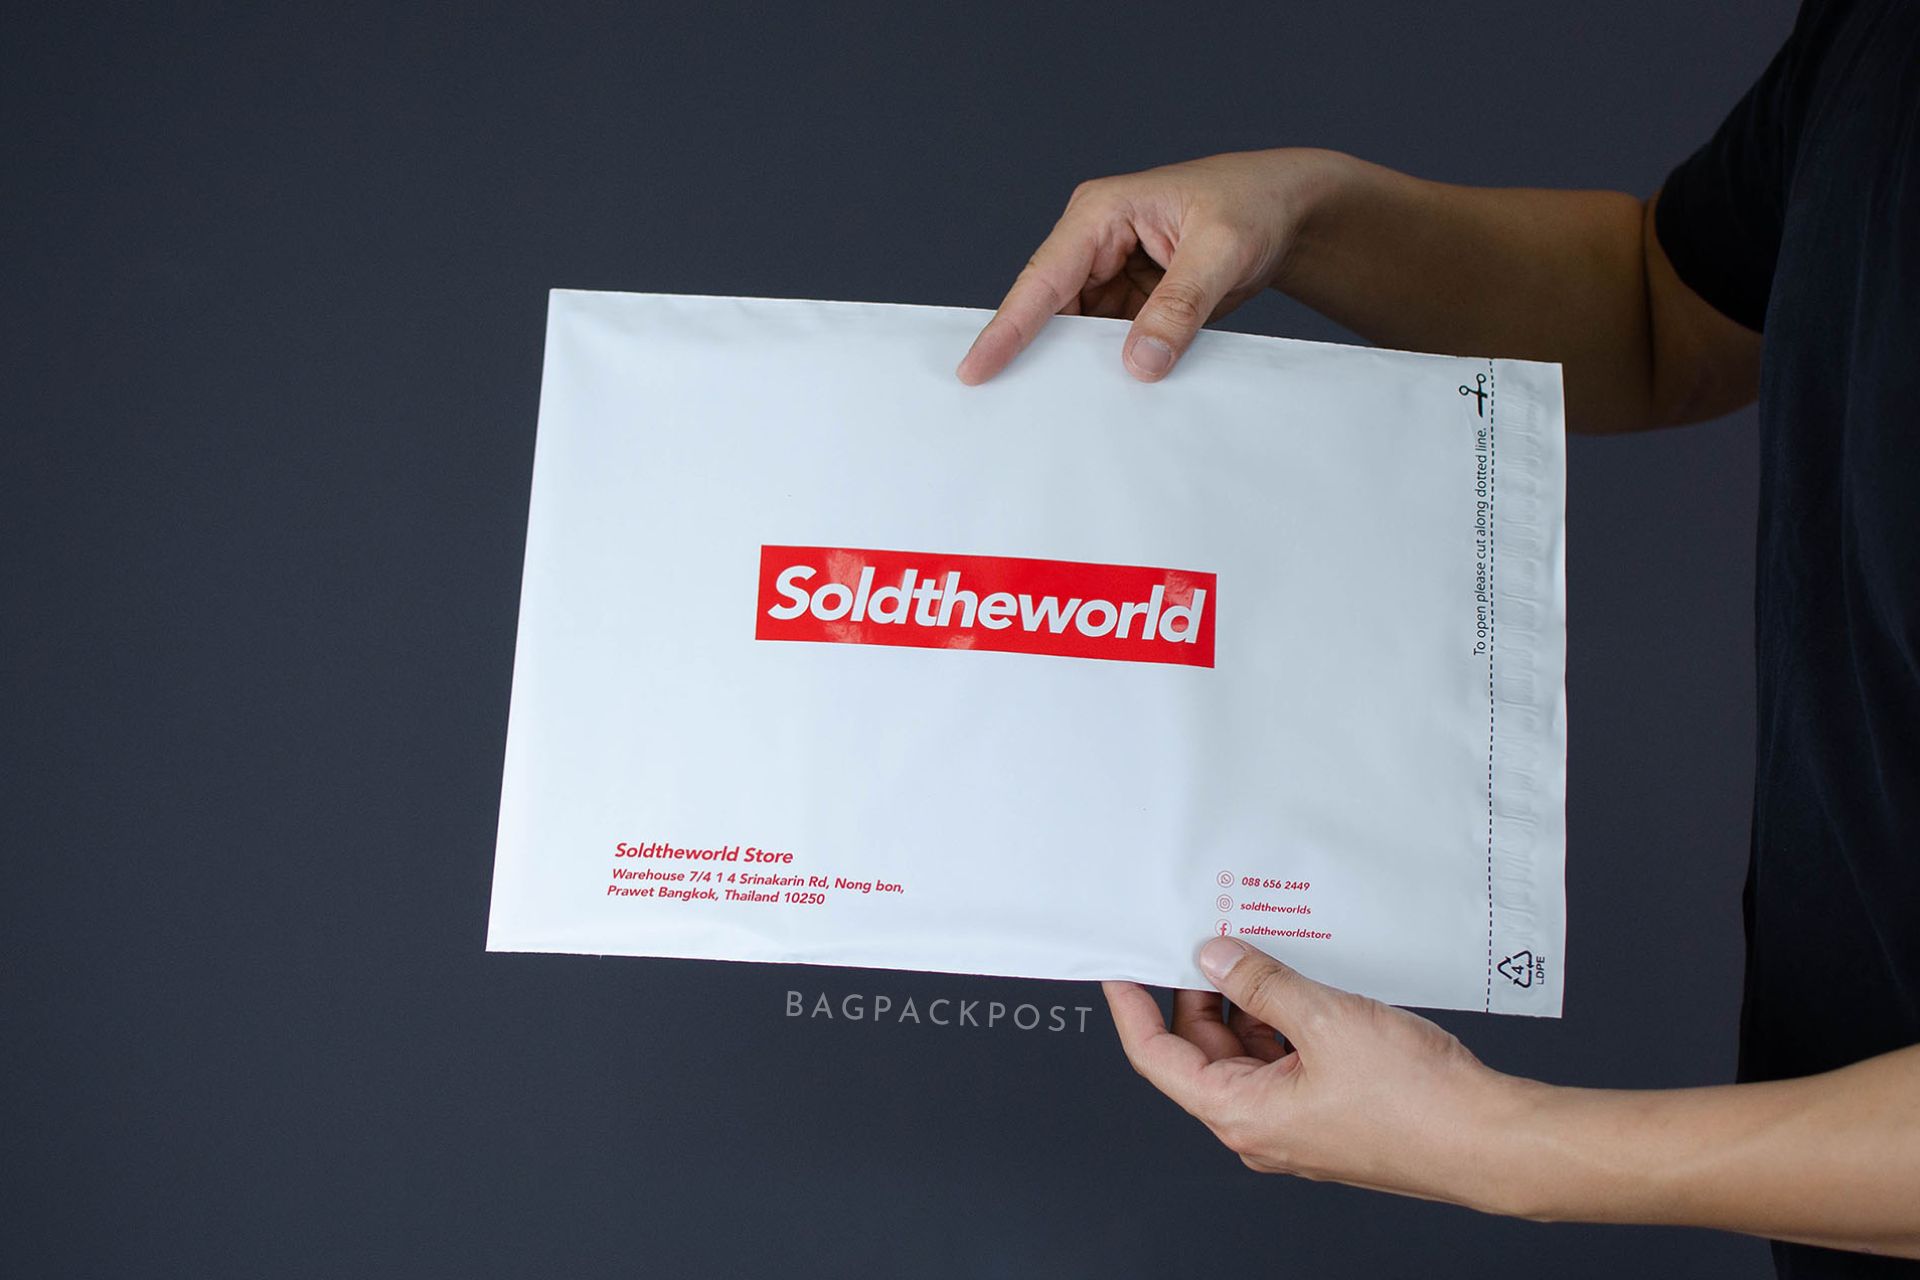 ผลิตถุงไปรษณีย์ ซองไปรษณีย์พิมพ์ลาย SoldTheWorldStore ซองไปรษณีย์สีขาว ถุงไปรษณีย์พิมพ์ลาย 2 BagPackPost